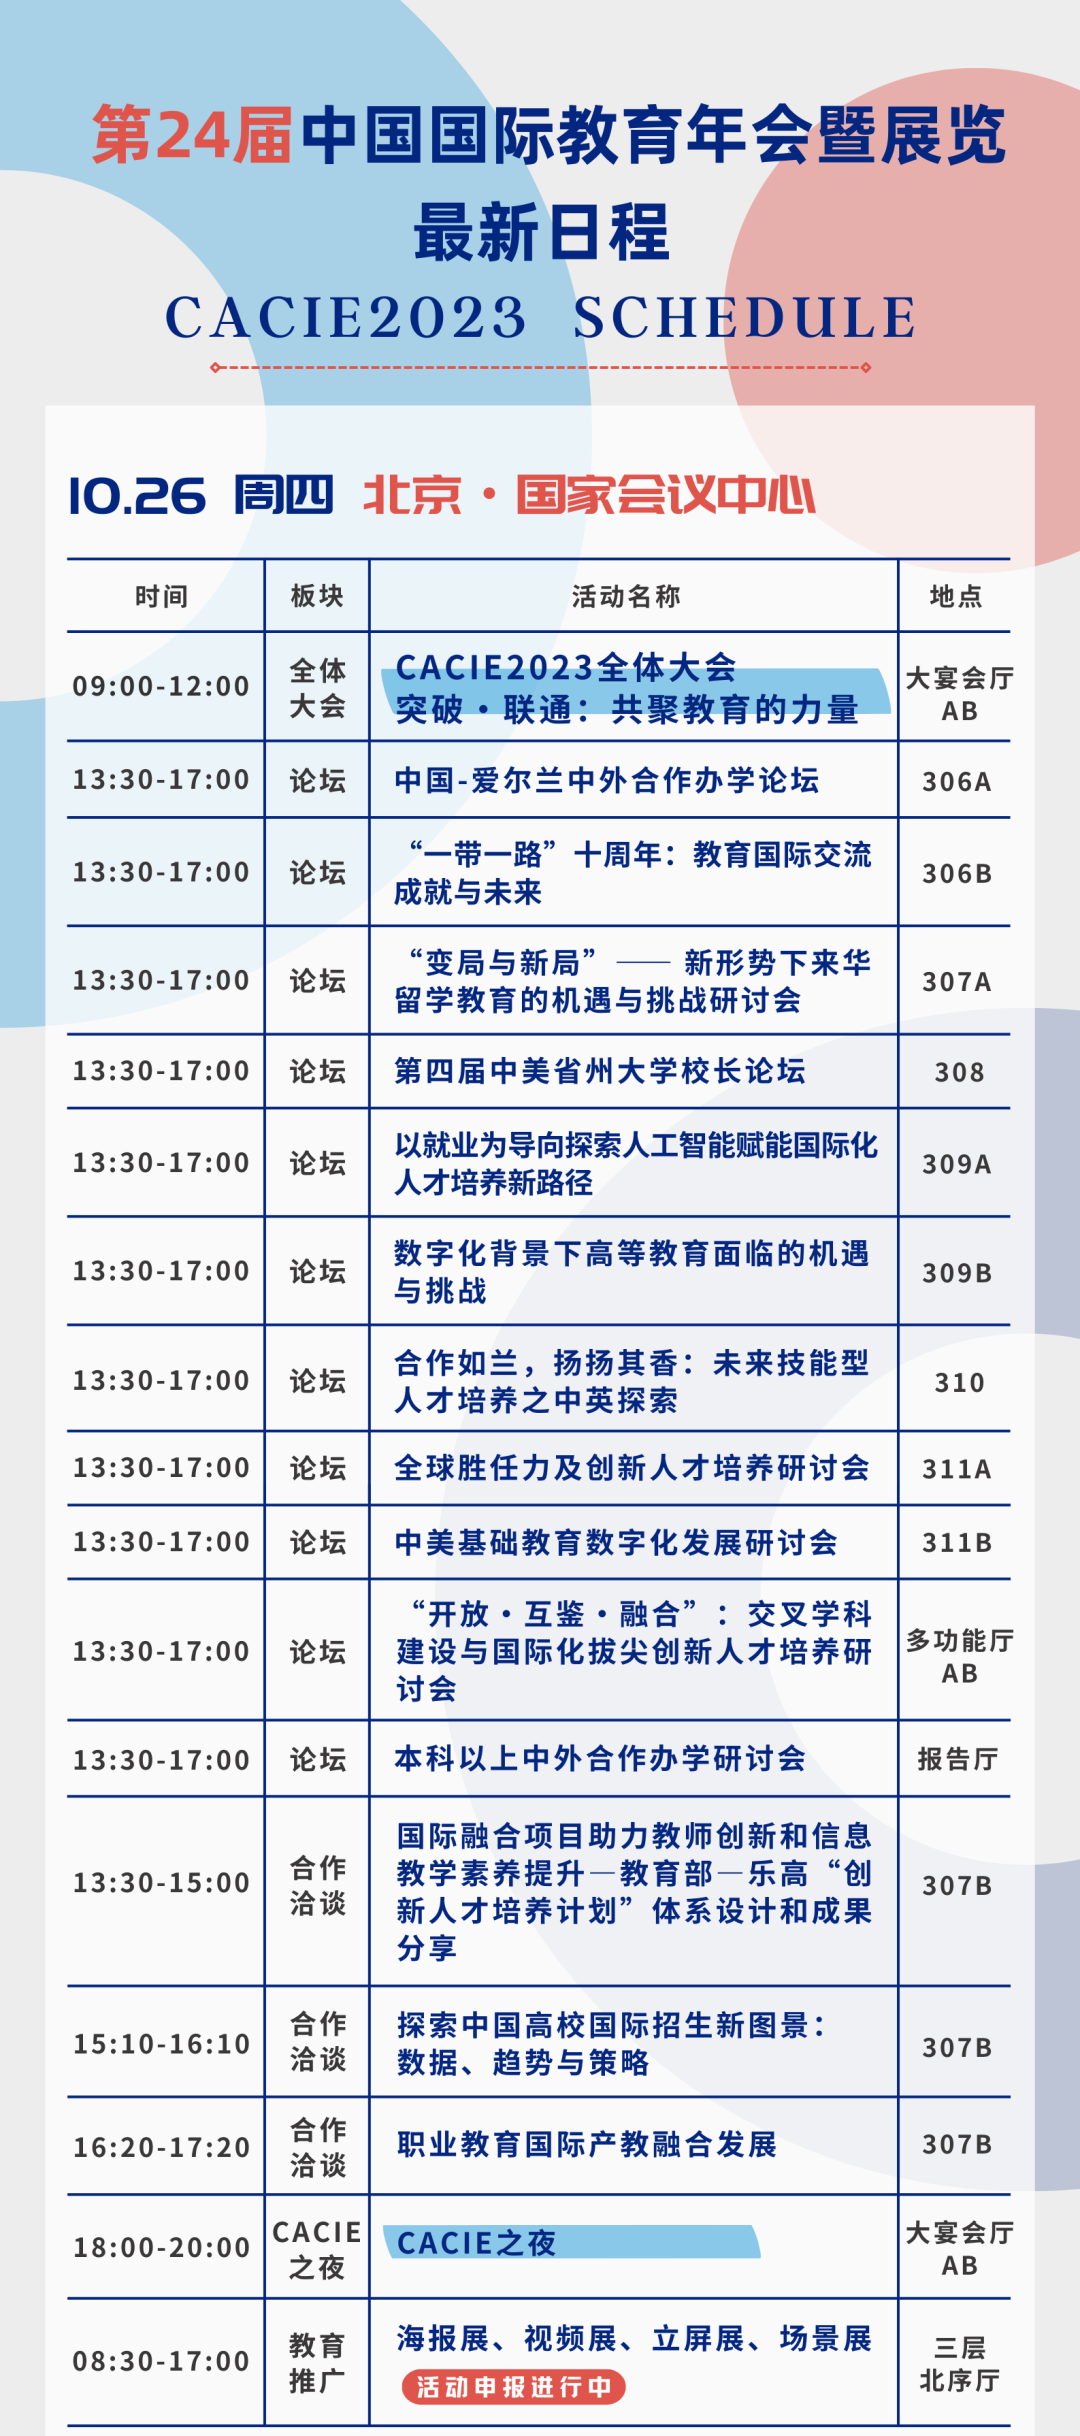 2023年中国国际教育年会暨展览日程公布